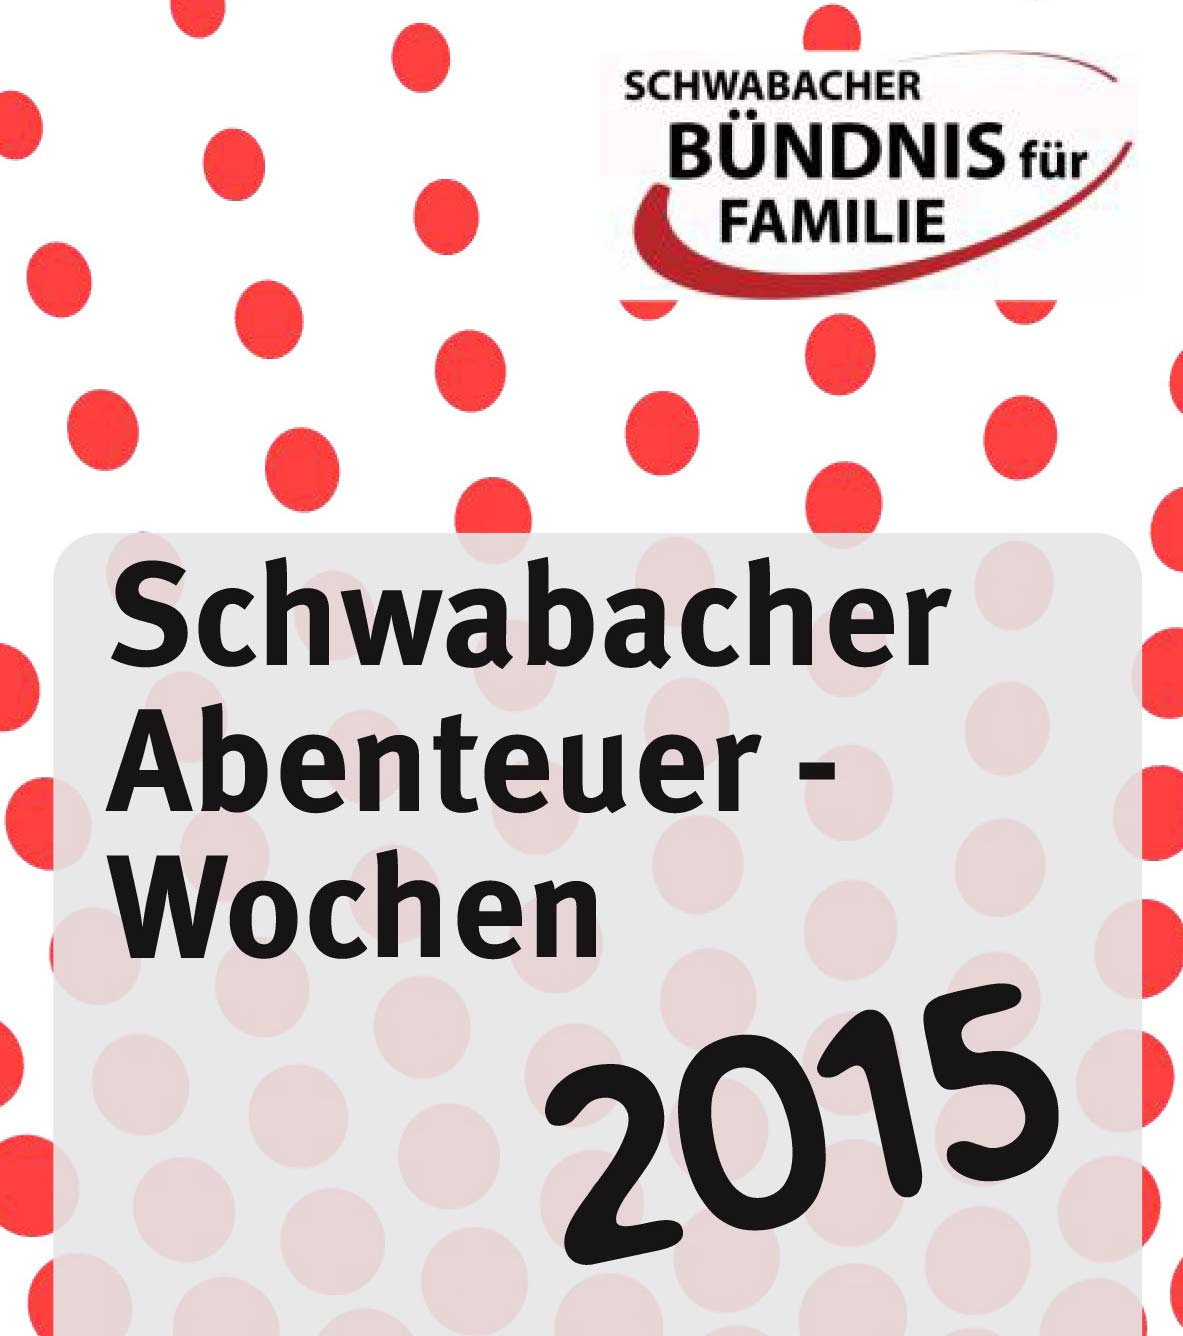 Schwabacher Abenteuer - Wochen